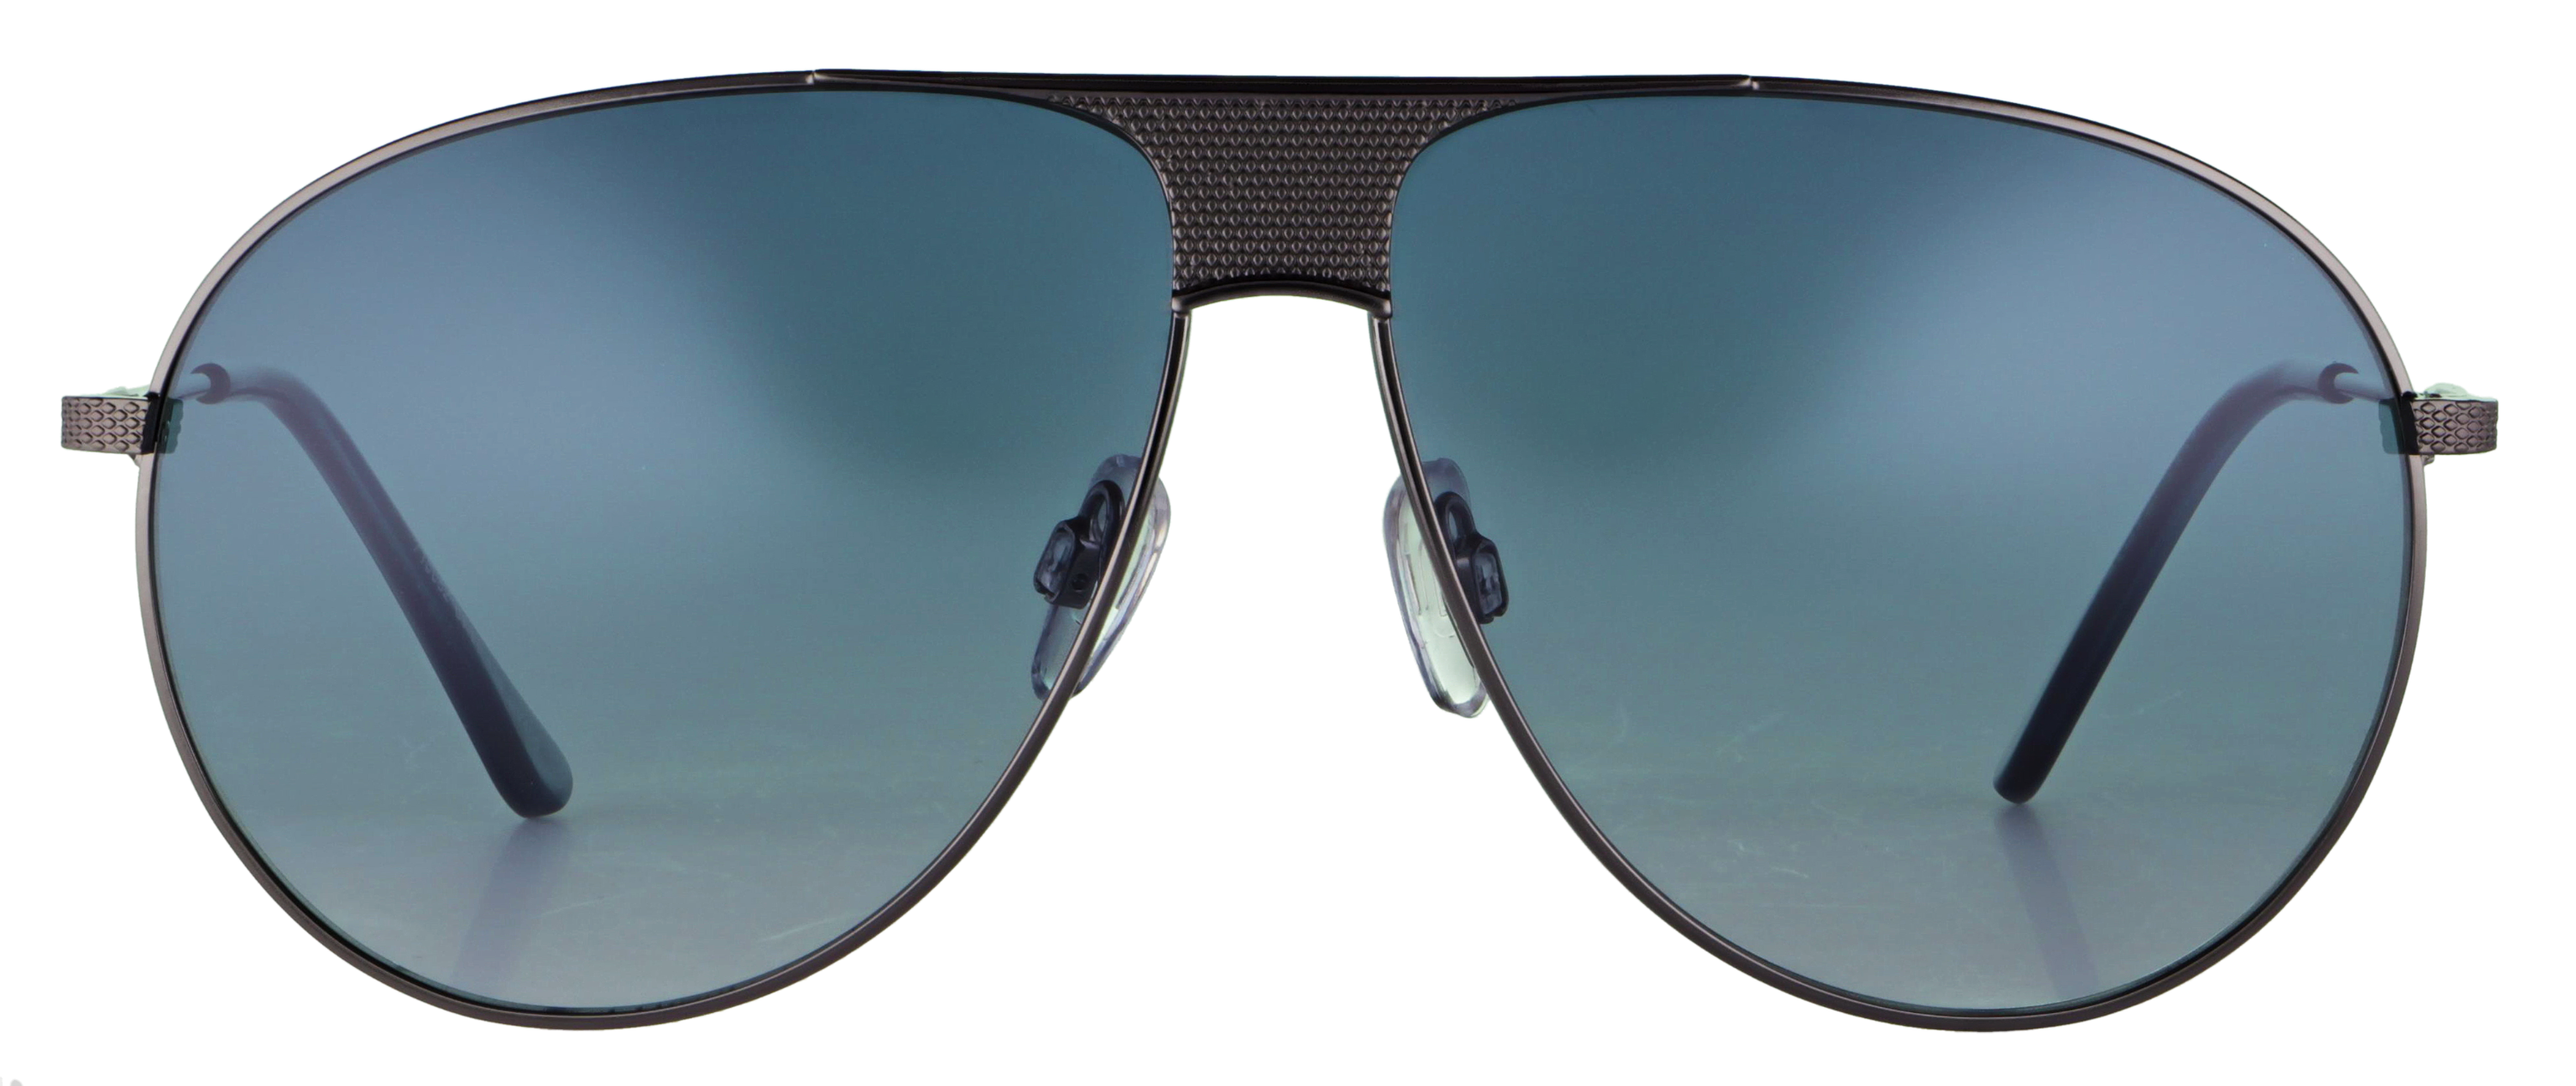 Das Bild zeigt die Sonnenbrille 718682 von der Marke Abele Optik in gun.